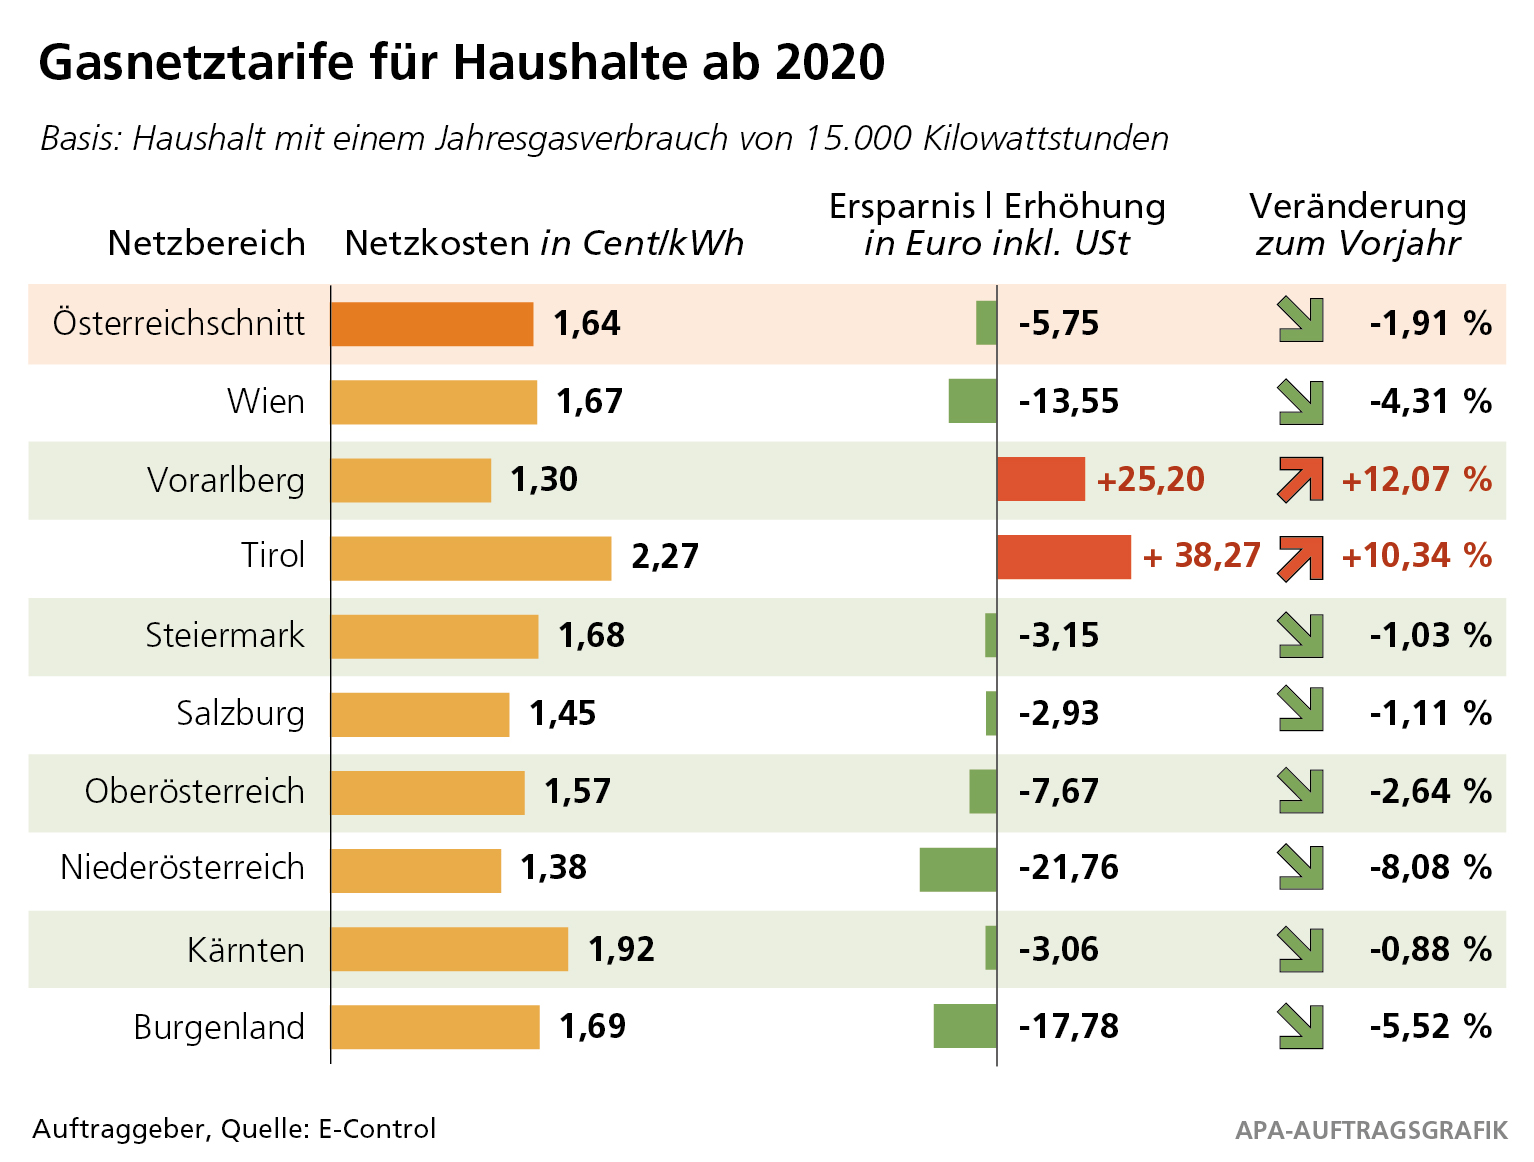 Die österreichischen Gaskunden können sich im Jahr 2020 zumeist wieder über sinkende Gasnetzentgelte freuen, nur in Westösterreich steigen die Tarife 